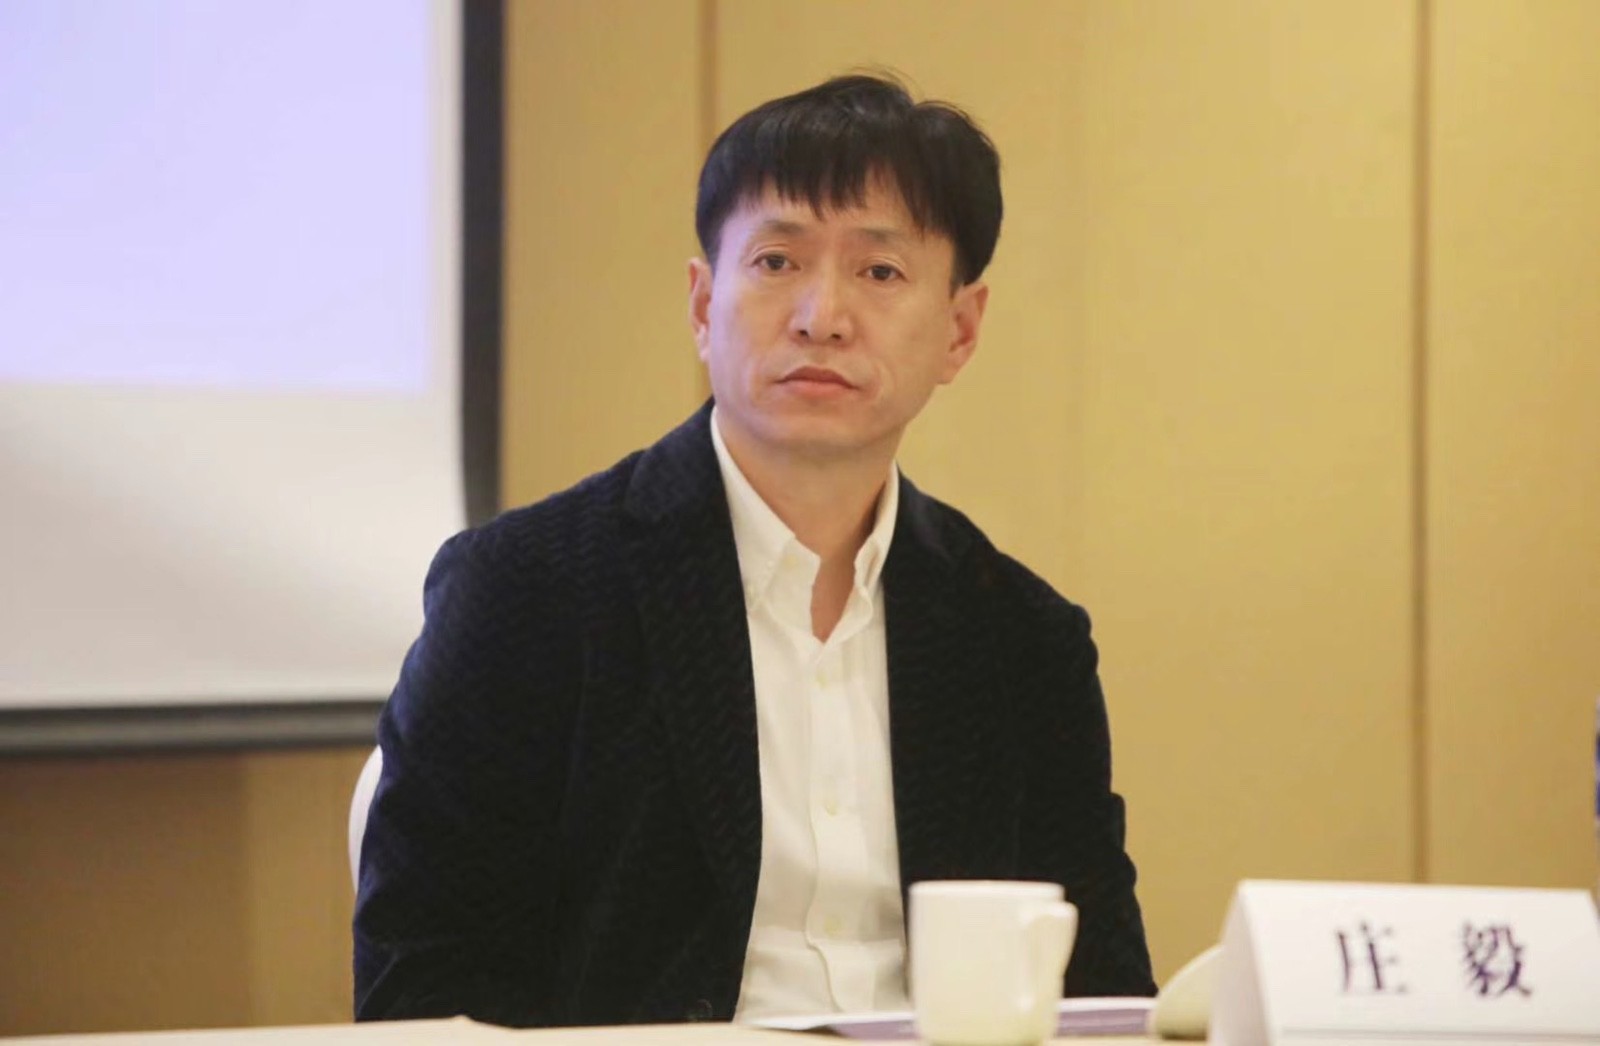 庄毅当选新任辽宁省足协主席 创中国职业联赛登场最大年龄纪录